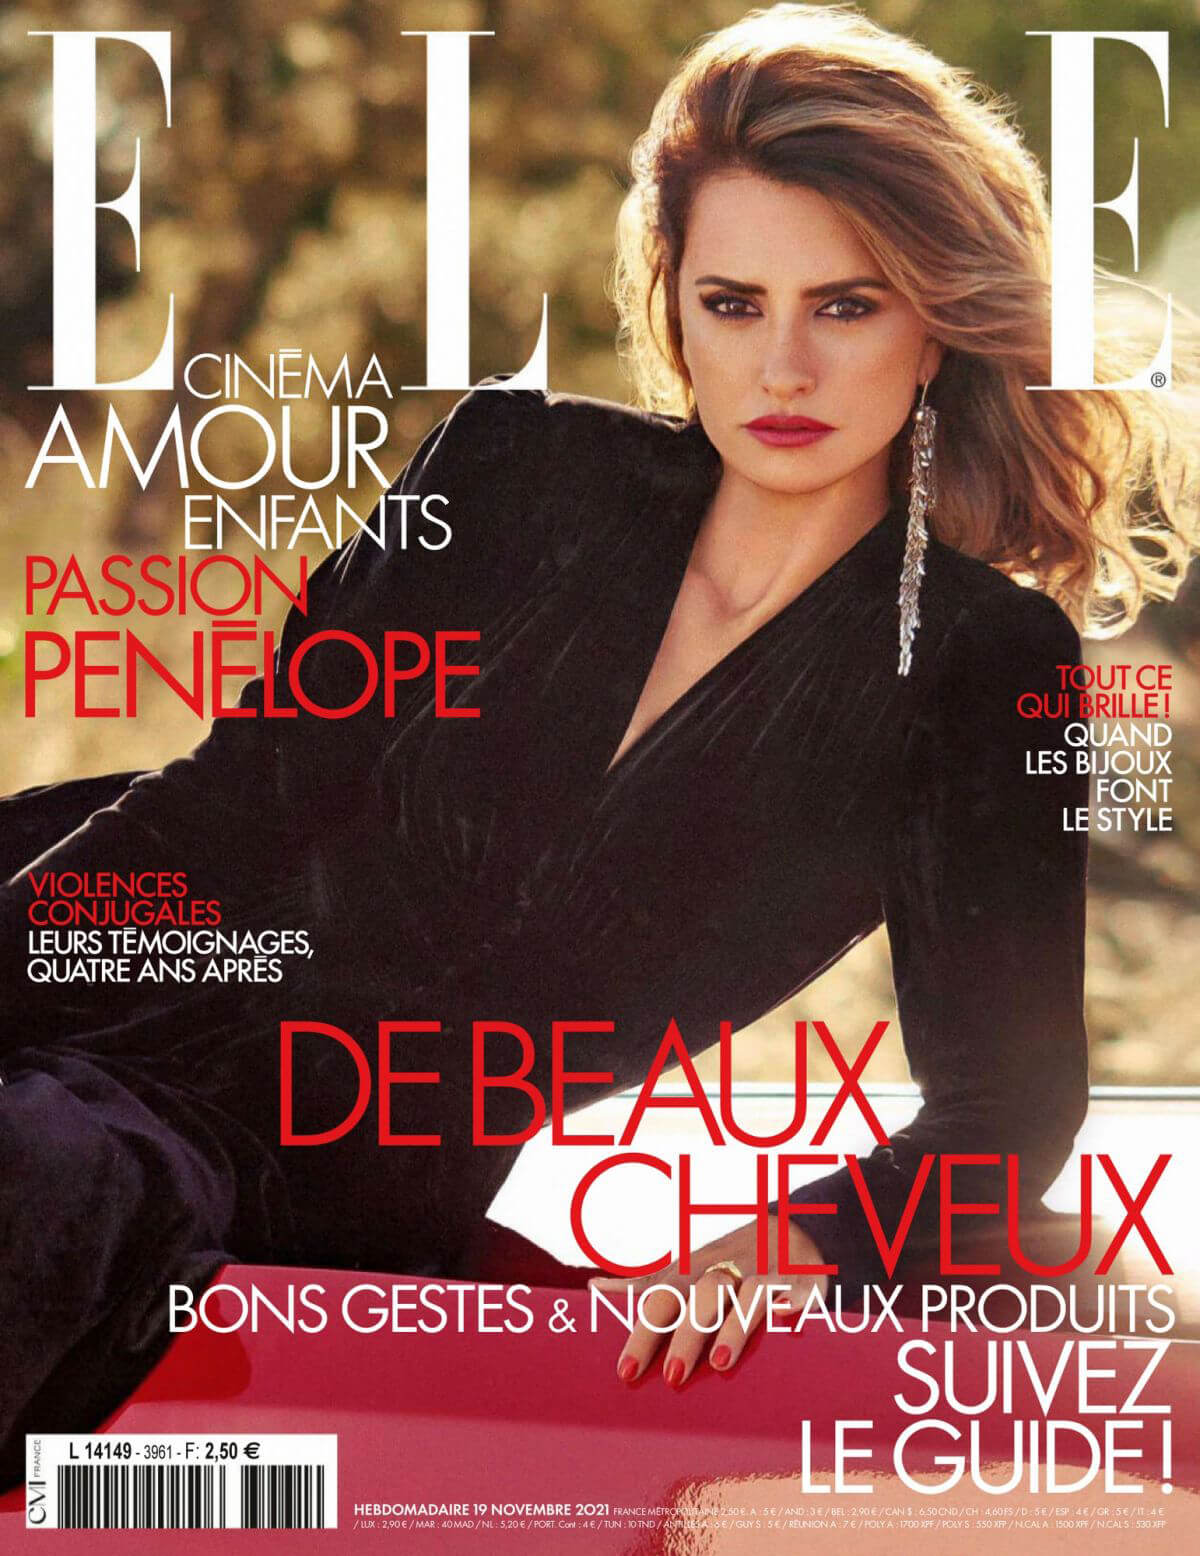 Penelope Cruz Photoshoot in Elle Magazine, France November 2021